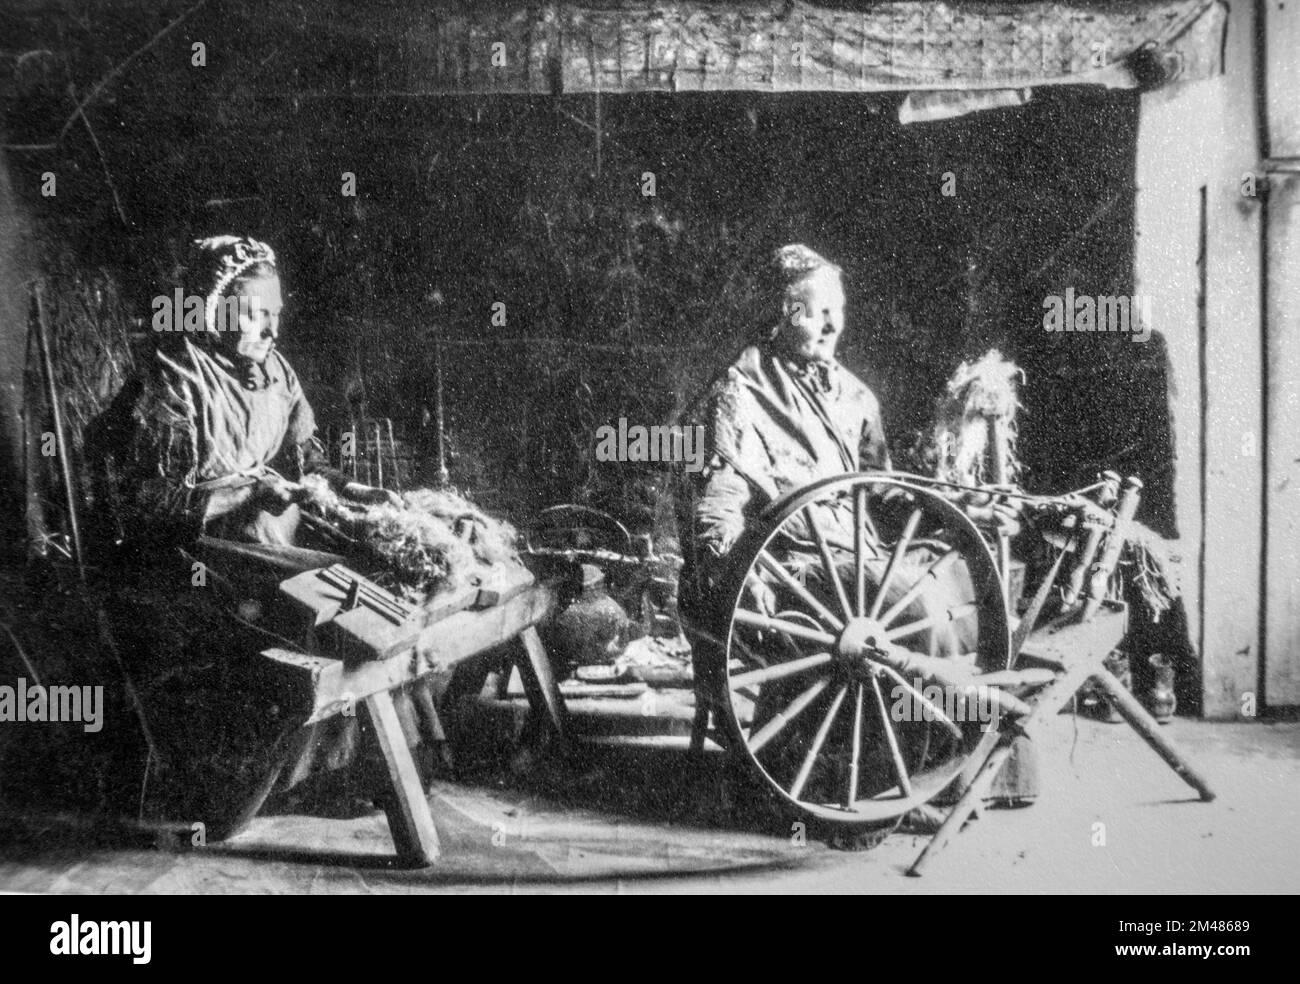 Foto aus dem frühen 20.. Jahrhundert, auf dem zwei alte weibliche Heimspinner gezeigt werden, die mit einem drehenden Holzrad und einem Hacken/Hacken zum Dressen von Flachs arbeiten Stockfoto